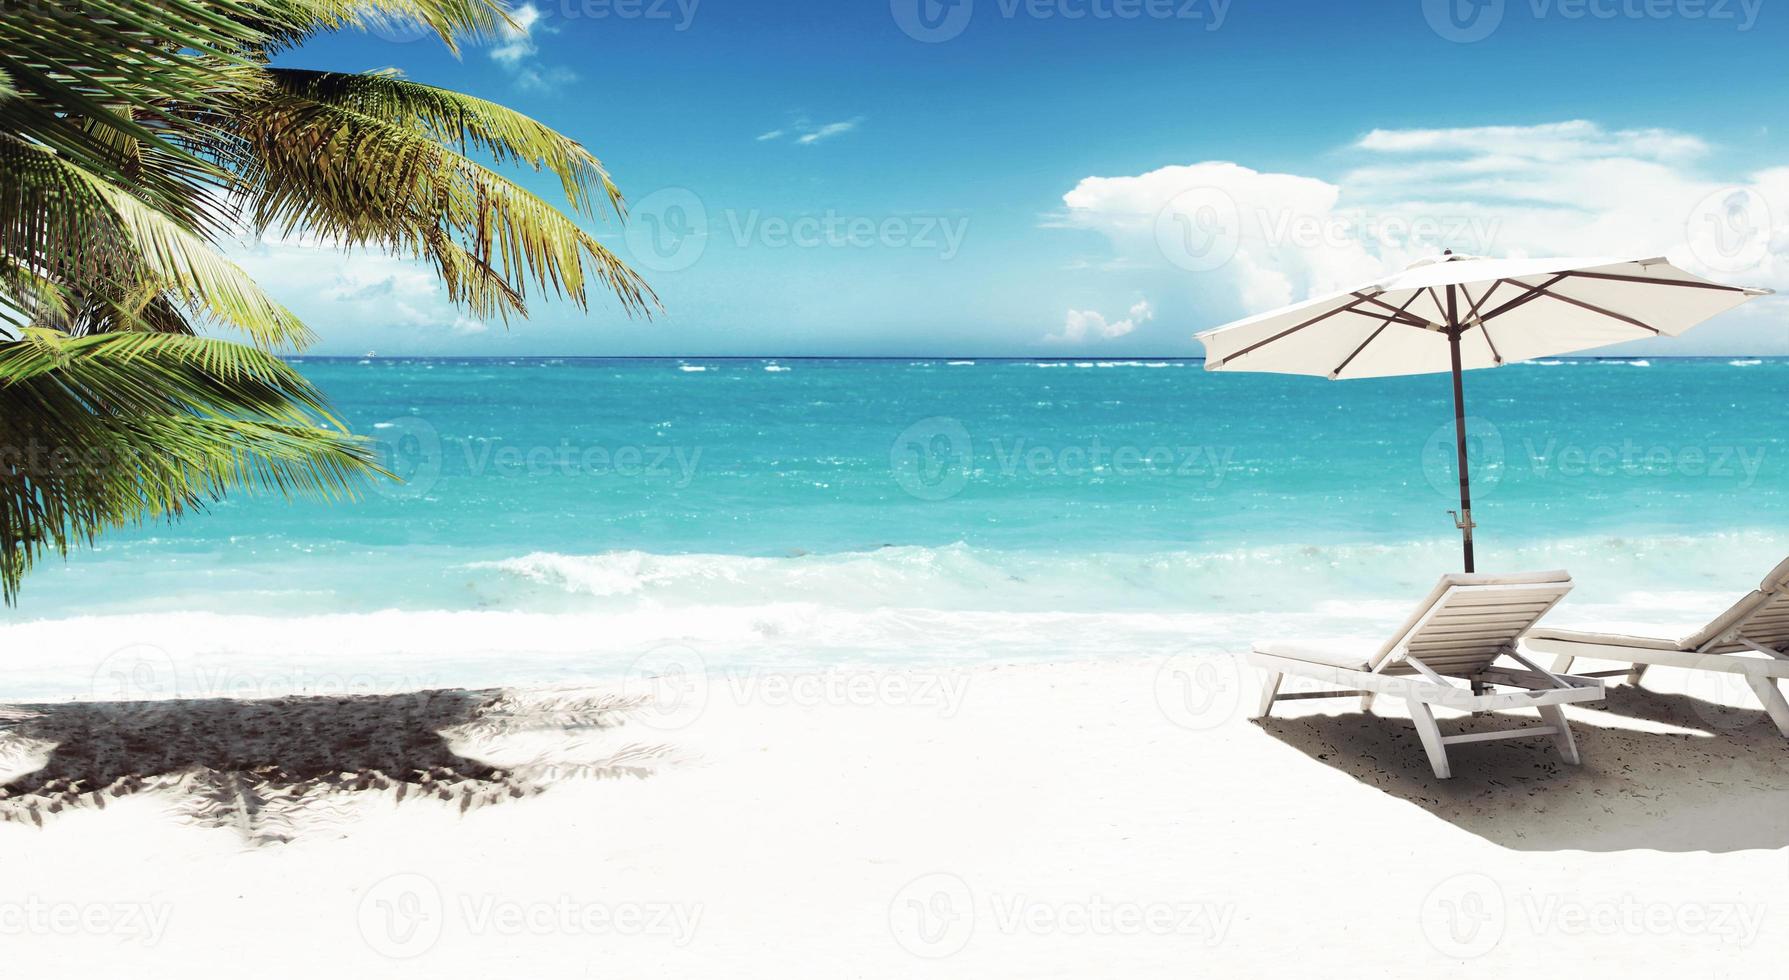 https://static.vecteezy.com/ti/fotos-kostenlos/p1/8119856-entspanne-am-tropischen-strand-in-der-sonne-auf-liegen-unter-dem-sonnenschirm-foto.jpg